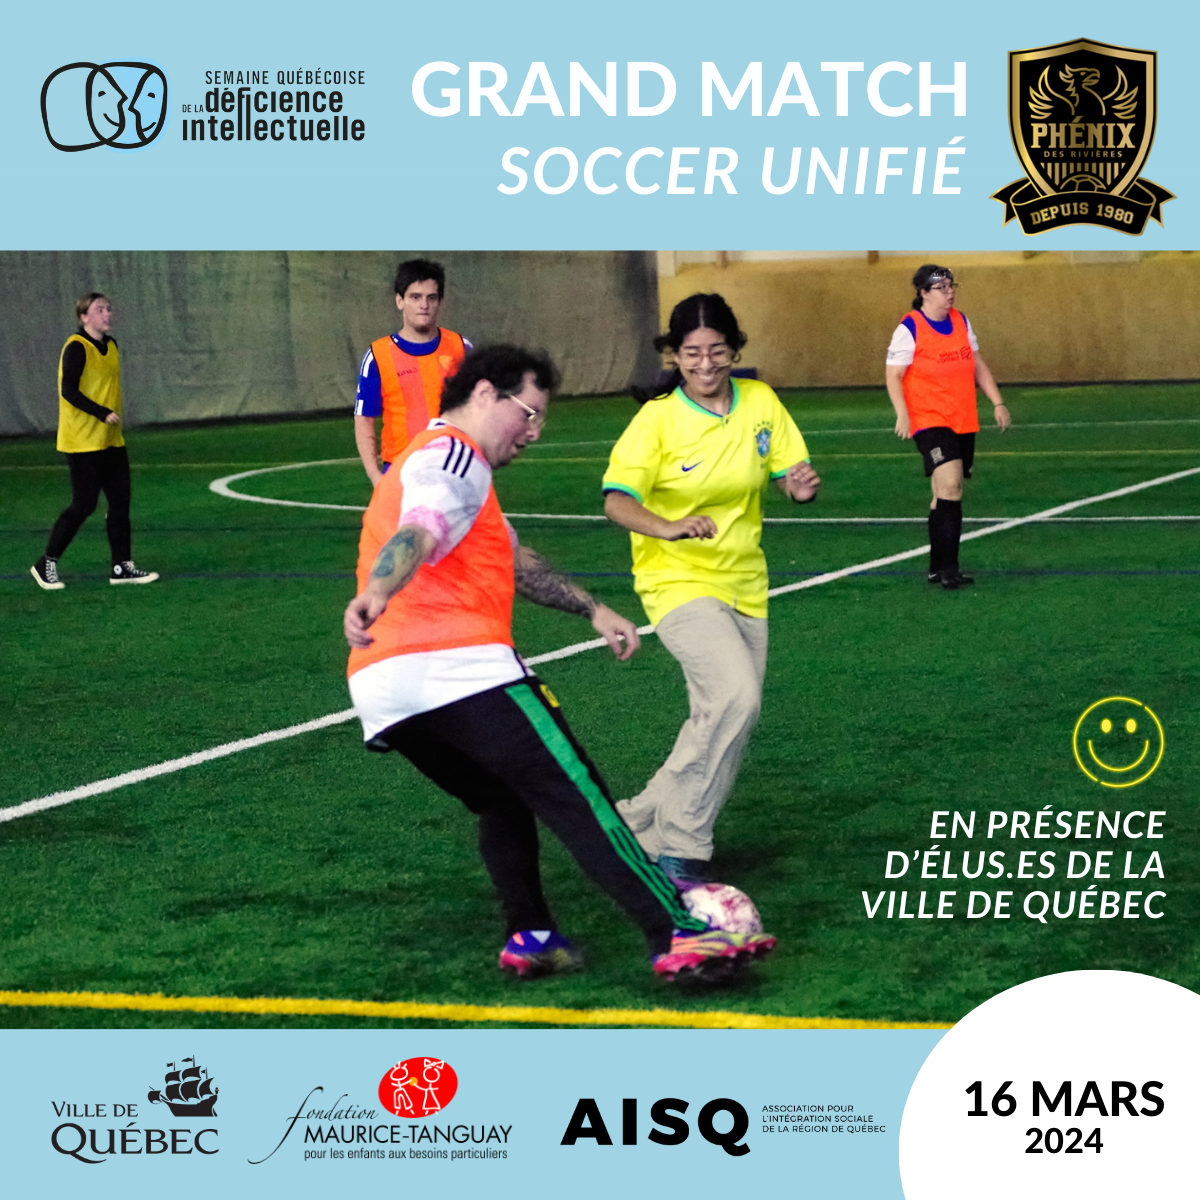 Grand match de soccer unifié – Semaine québécoise de la déficience intellectuelle